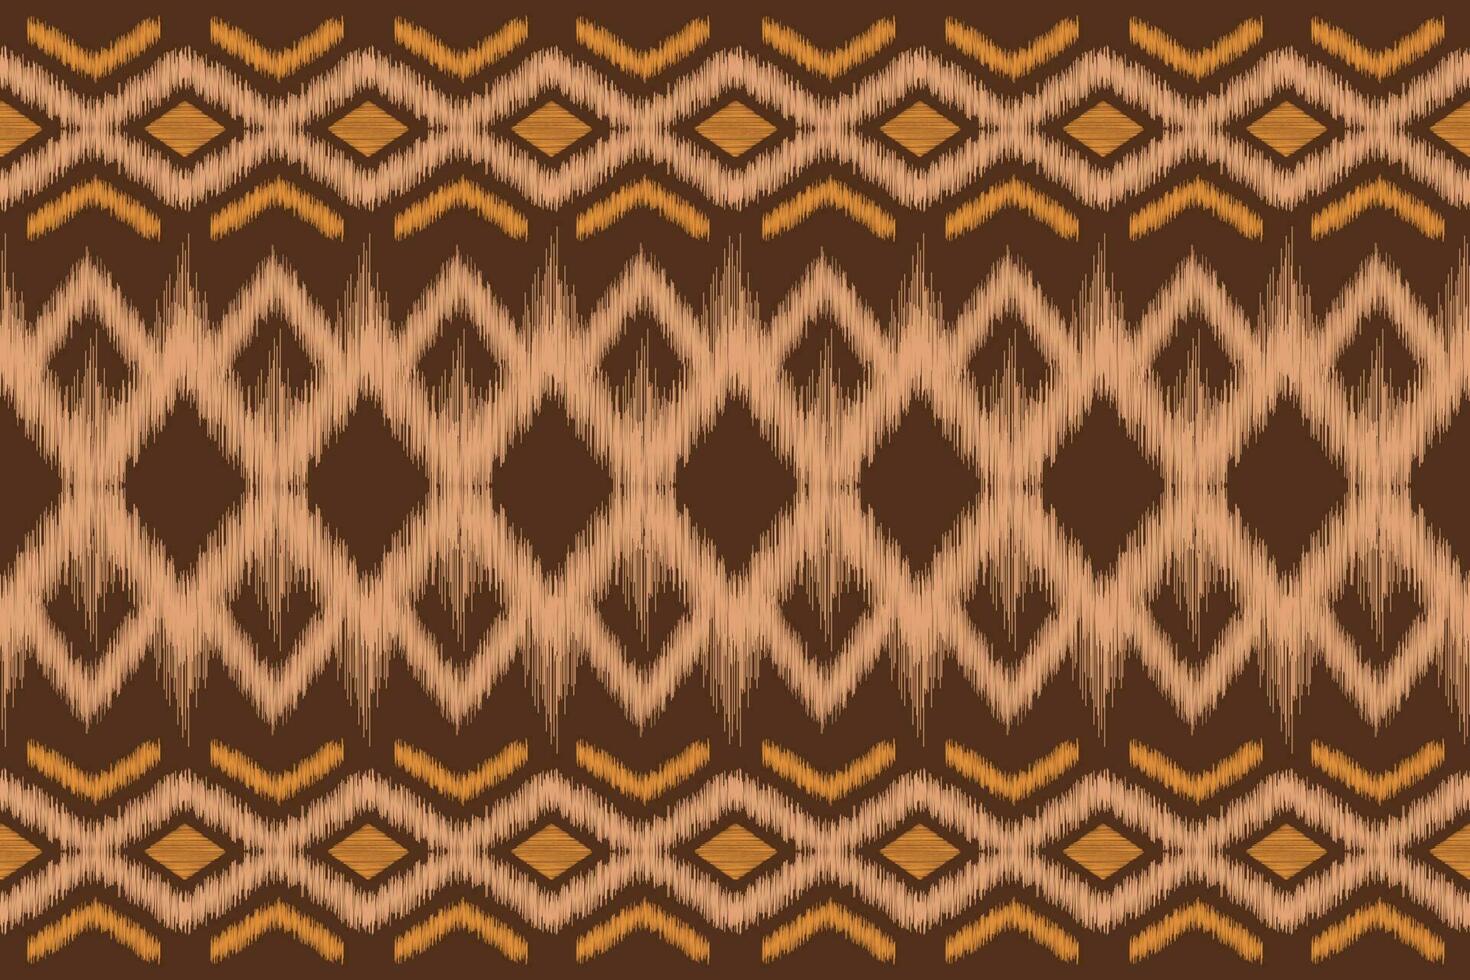 étnico ikat tela modelo geométrico estilo.africano ikat bordado étnico oriental modelo motivo marrón antecedentes. resumen,ilustración,textura,ropa,paño,decoración,alfombra,seda. vector